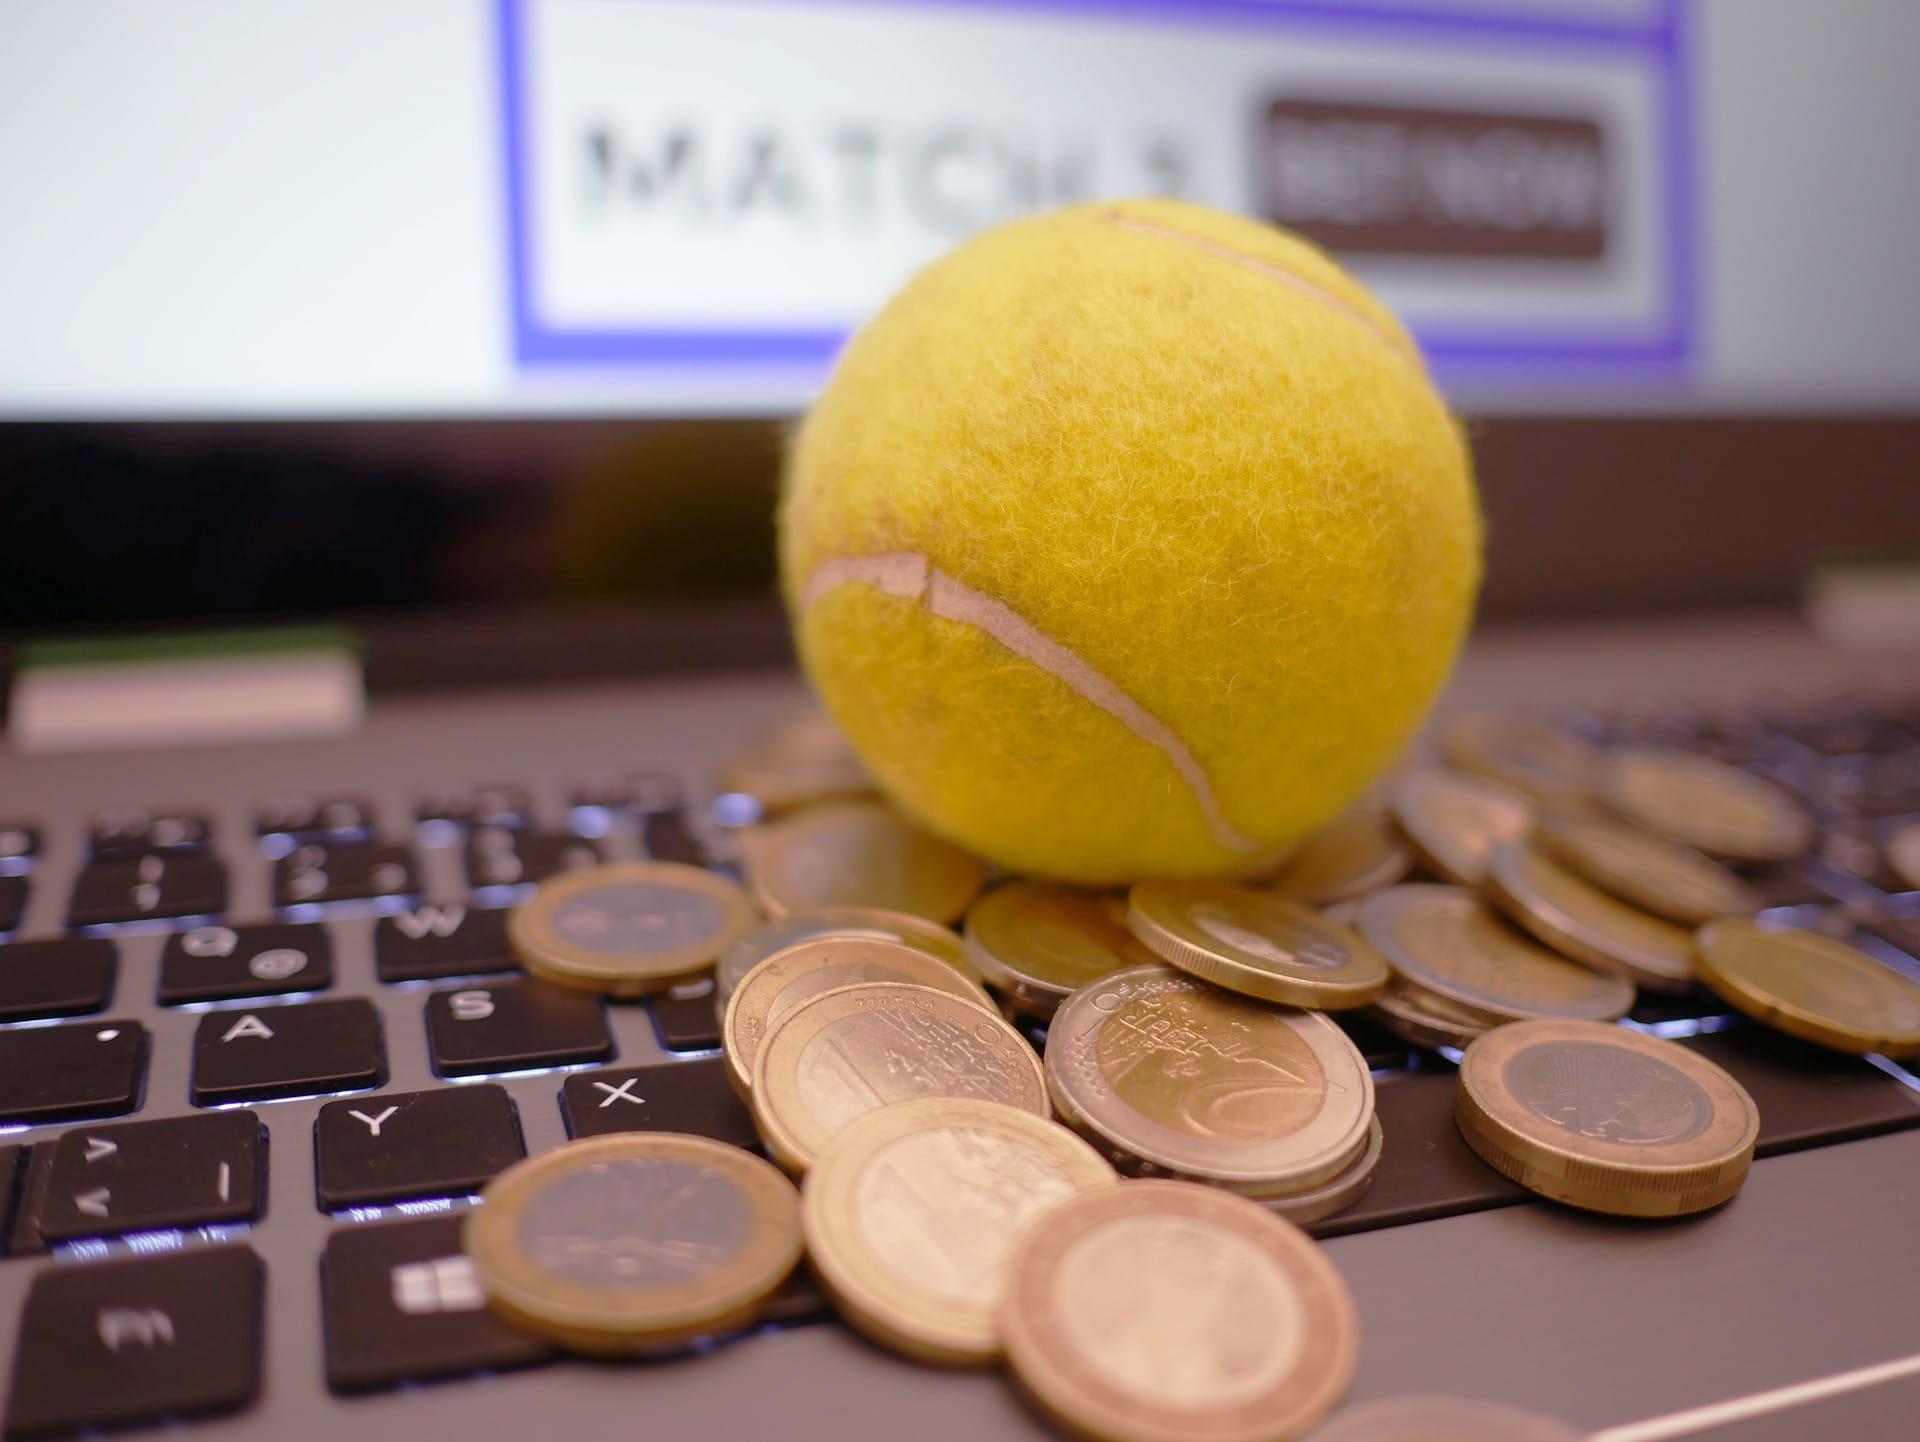 Gambar bola tenis di komputer dengan uang juga ditampilkan